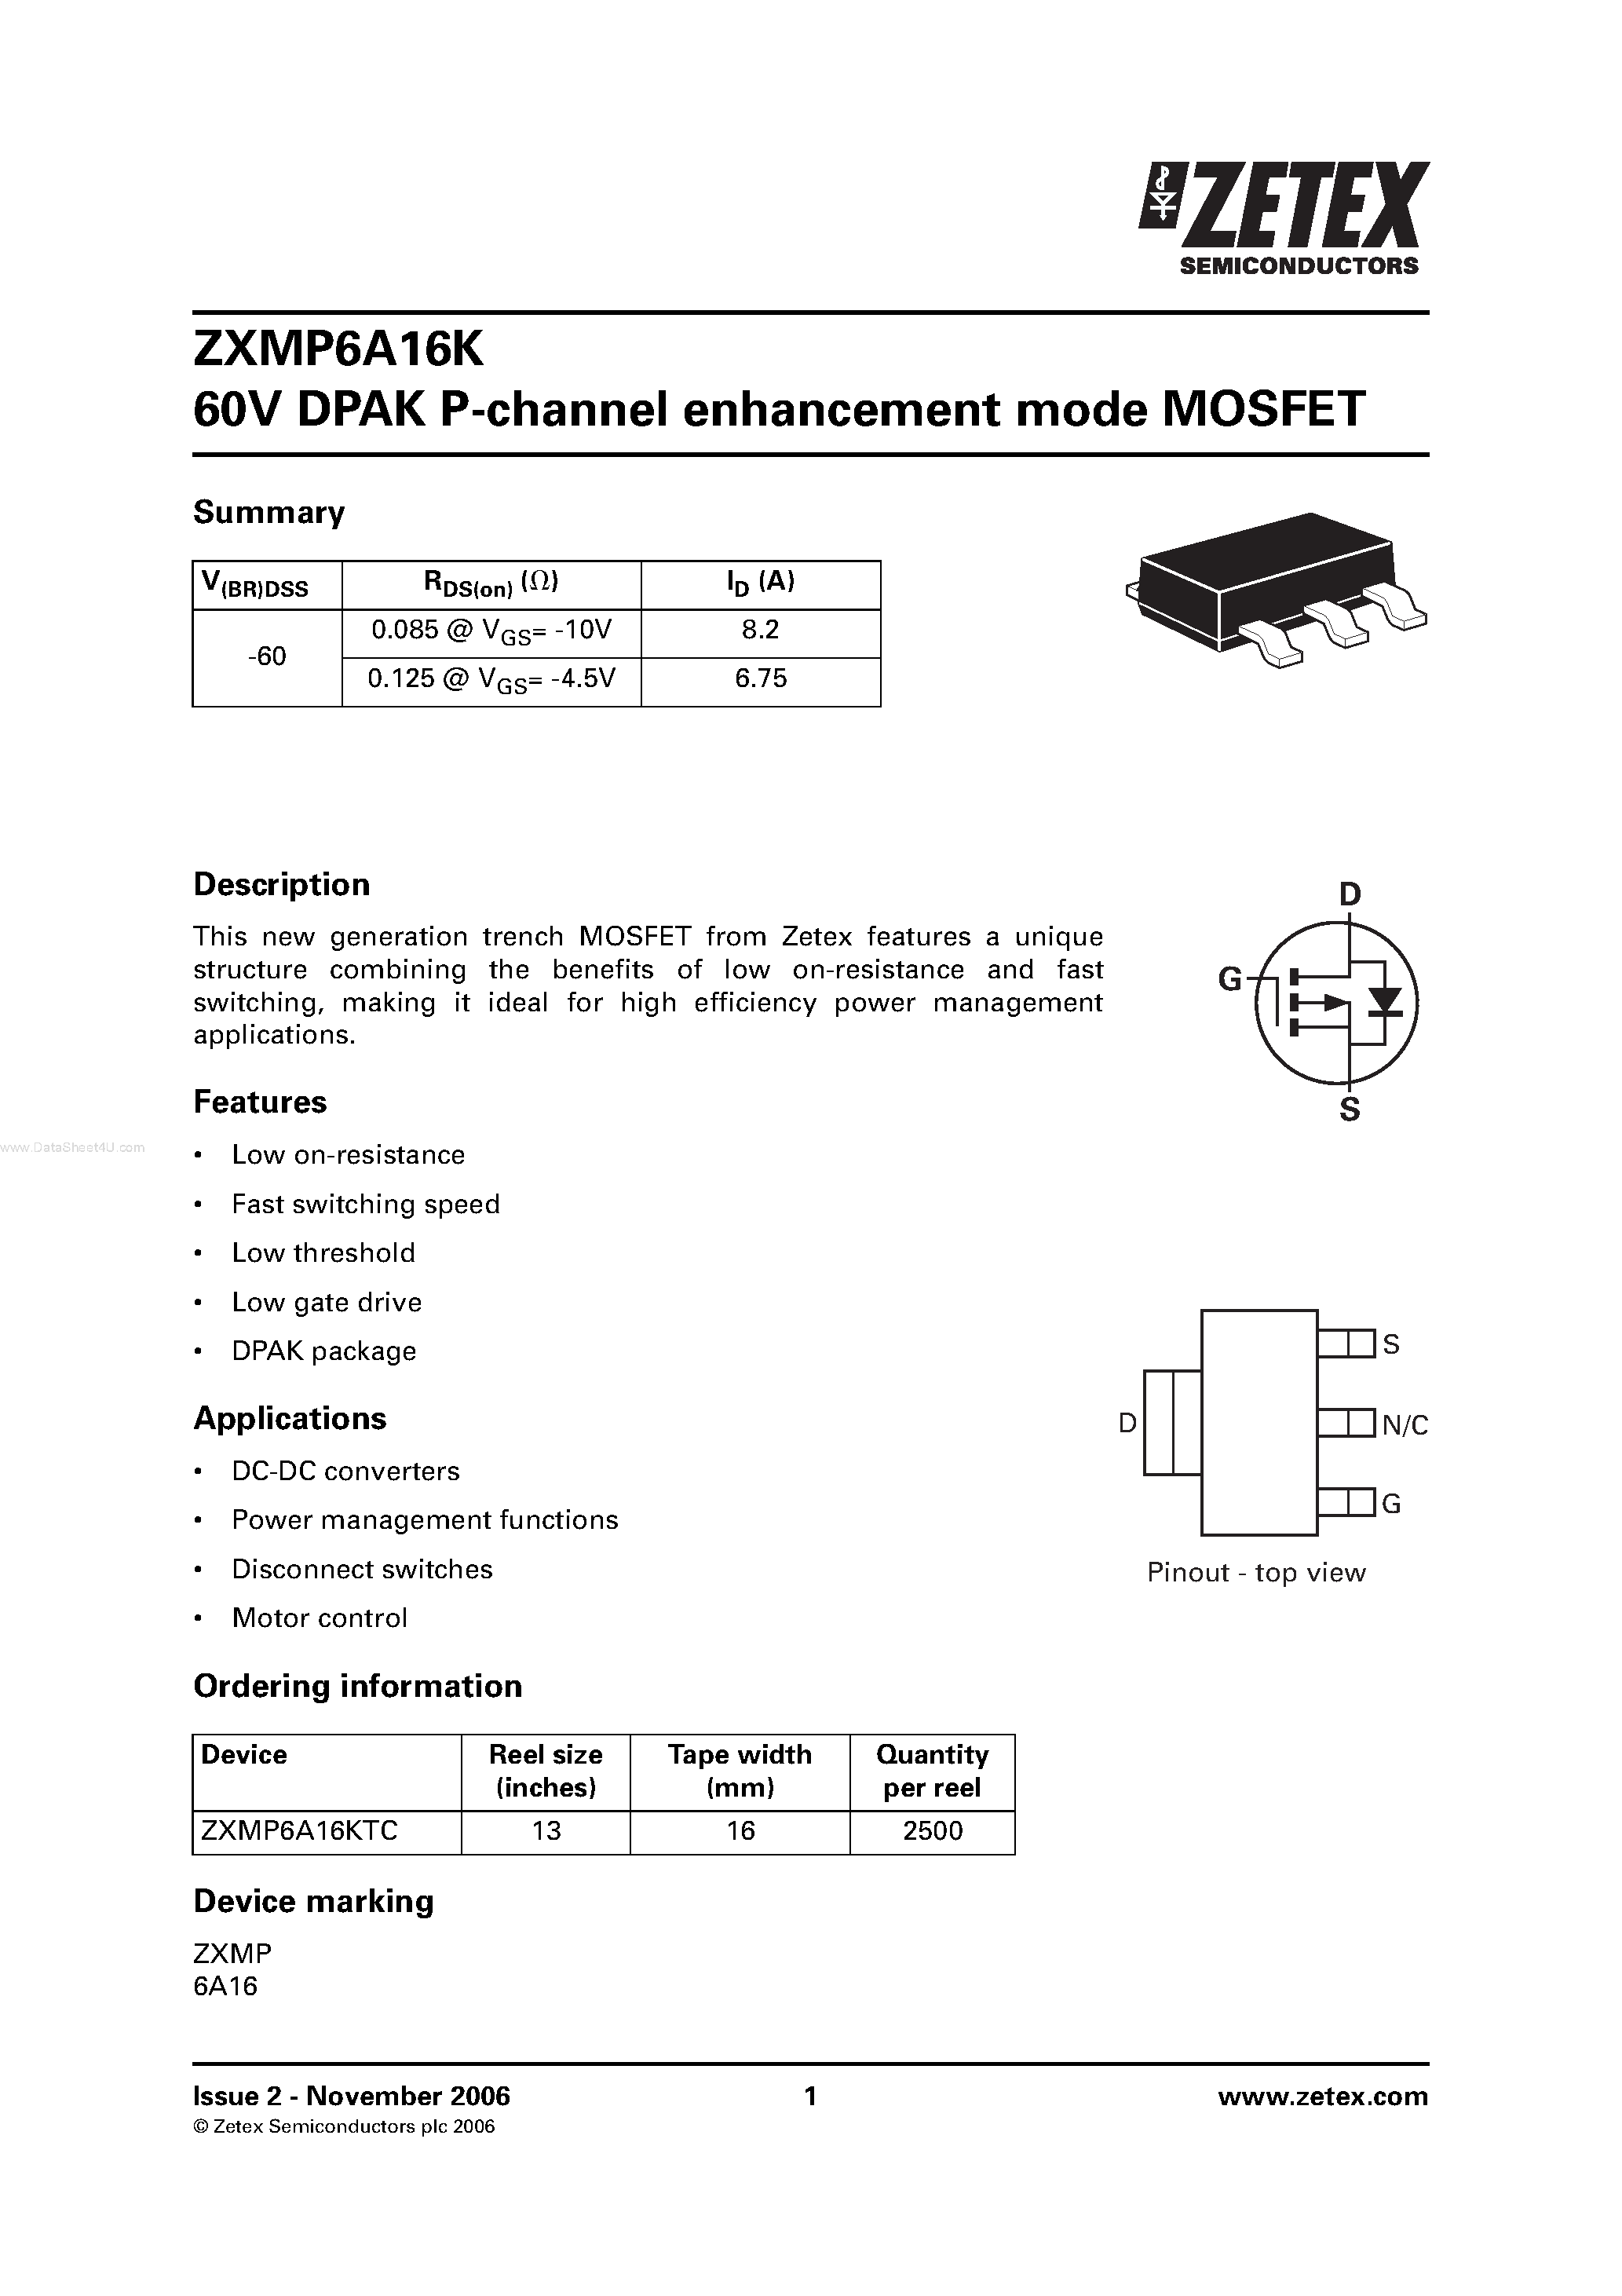 Datasheet ZXMP6A16K - 60V DPAK P-channel enhancement mode MOSFET page 1